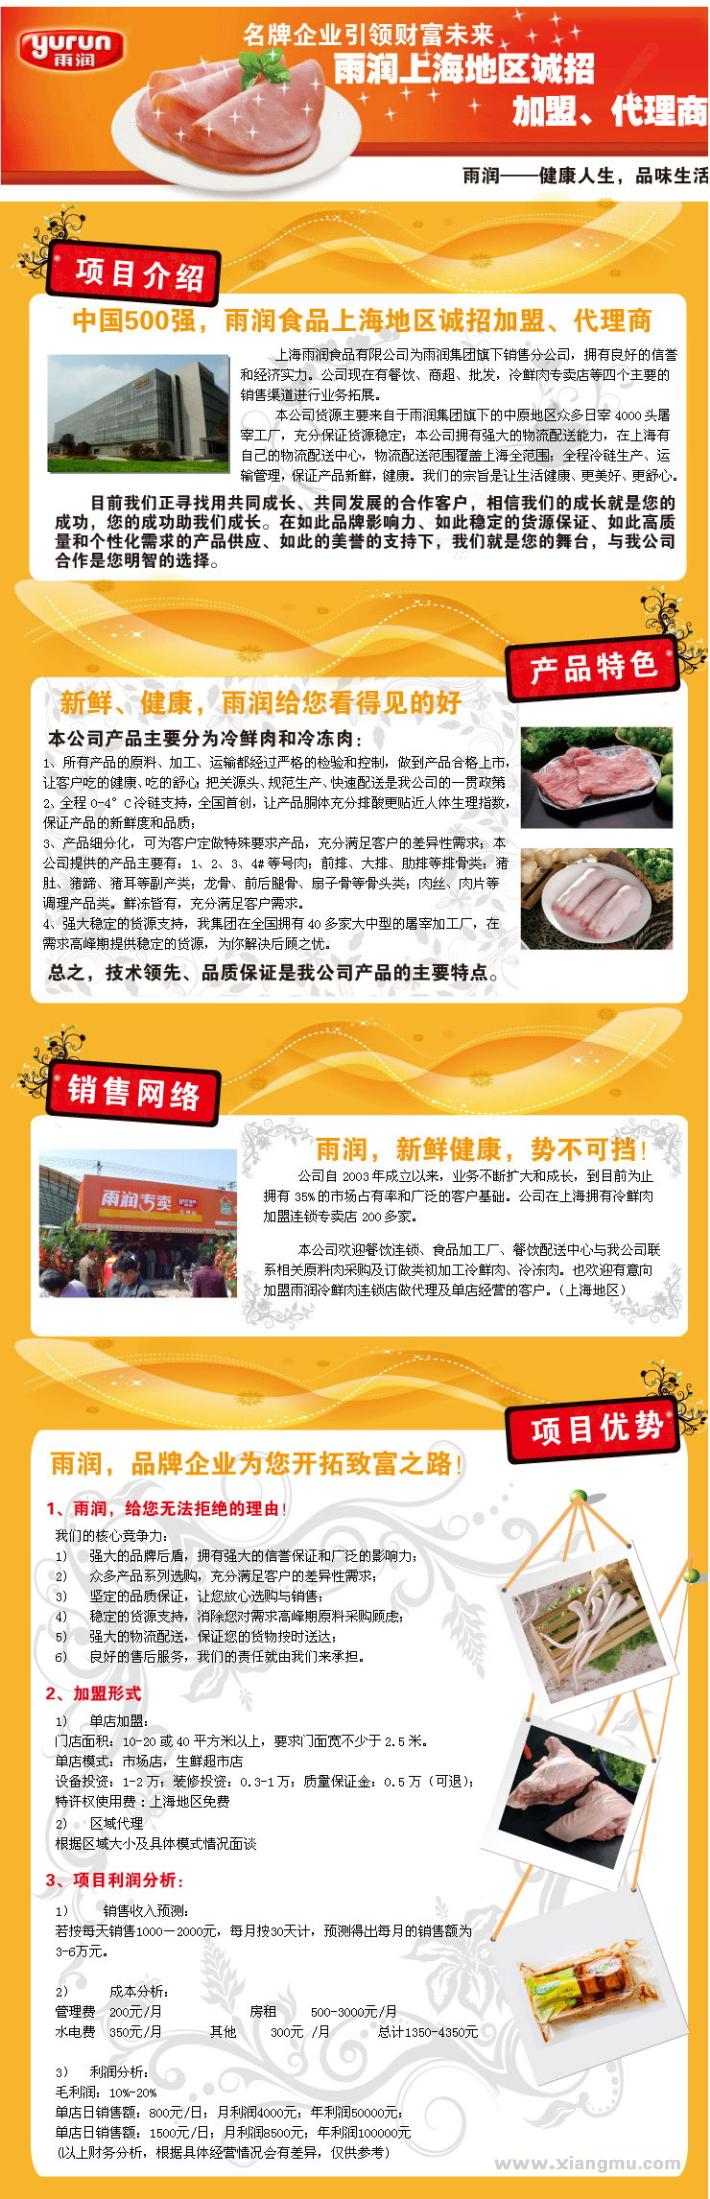 中国肉食品龙头企业雨润食品诚招代理_1